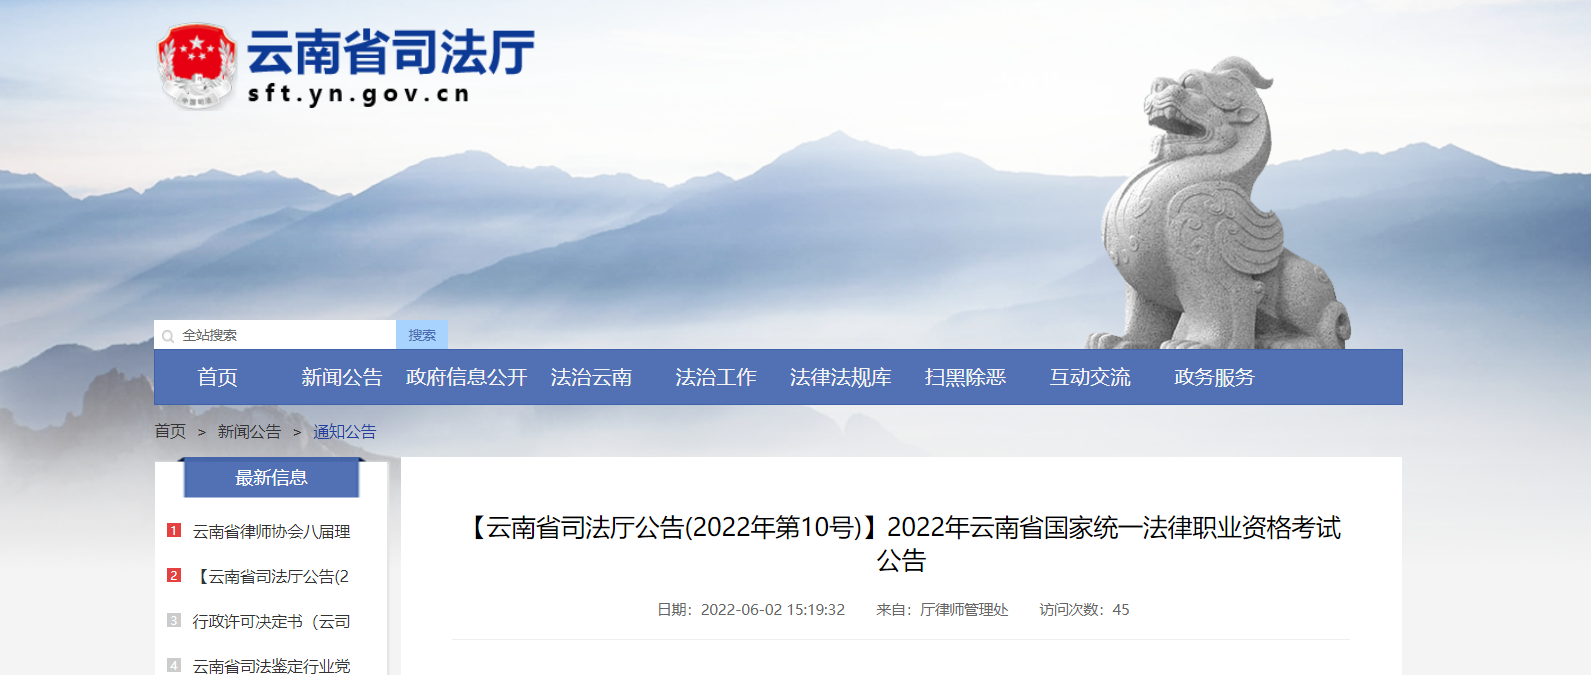 2022年云南省国家统一法律职业资格考试资格审核及相关公告